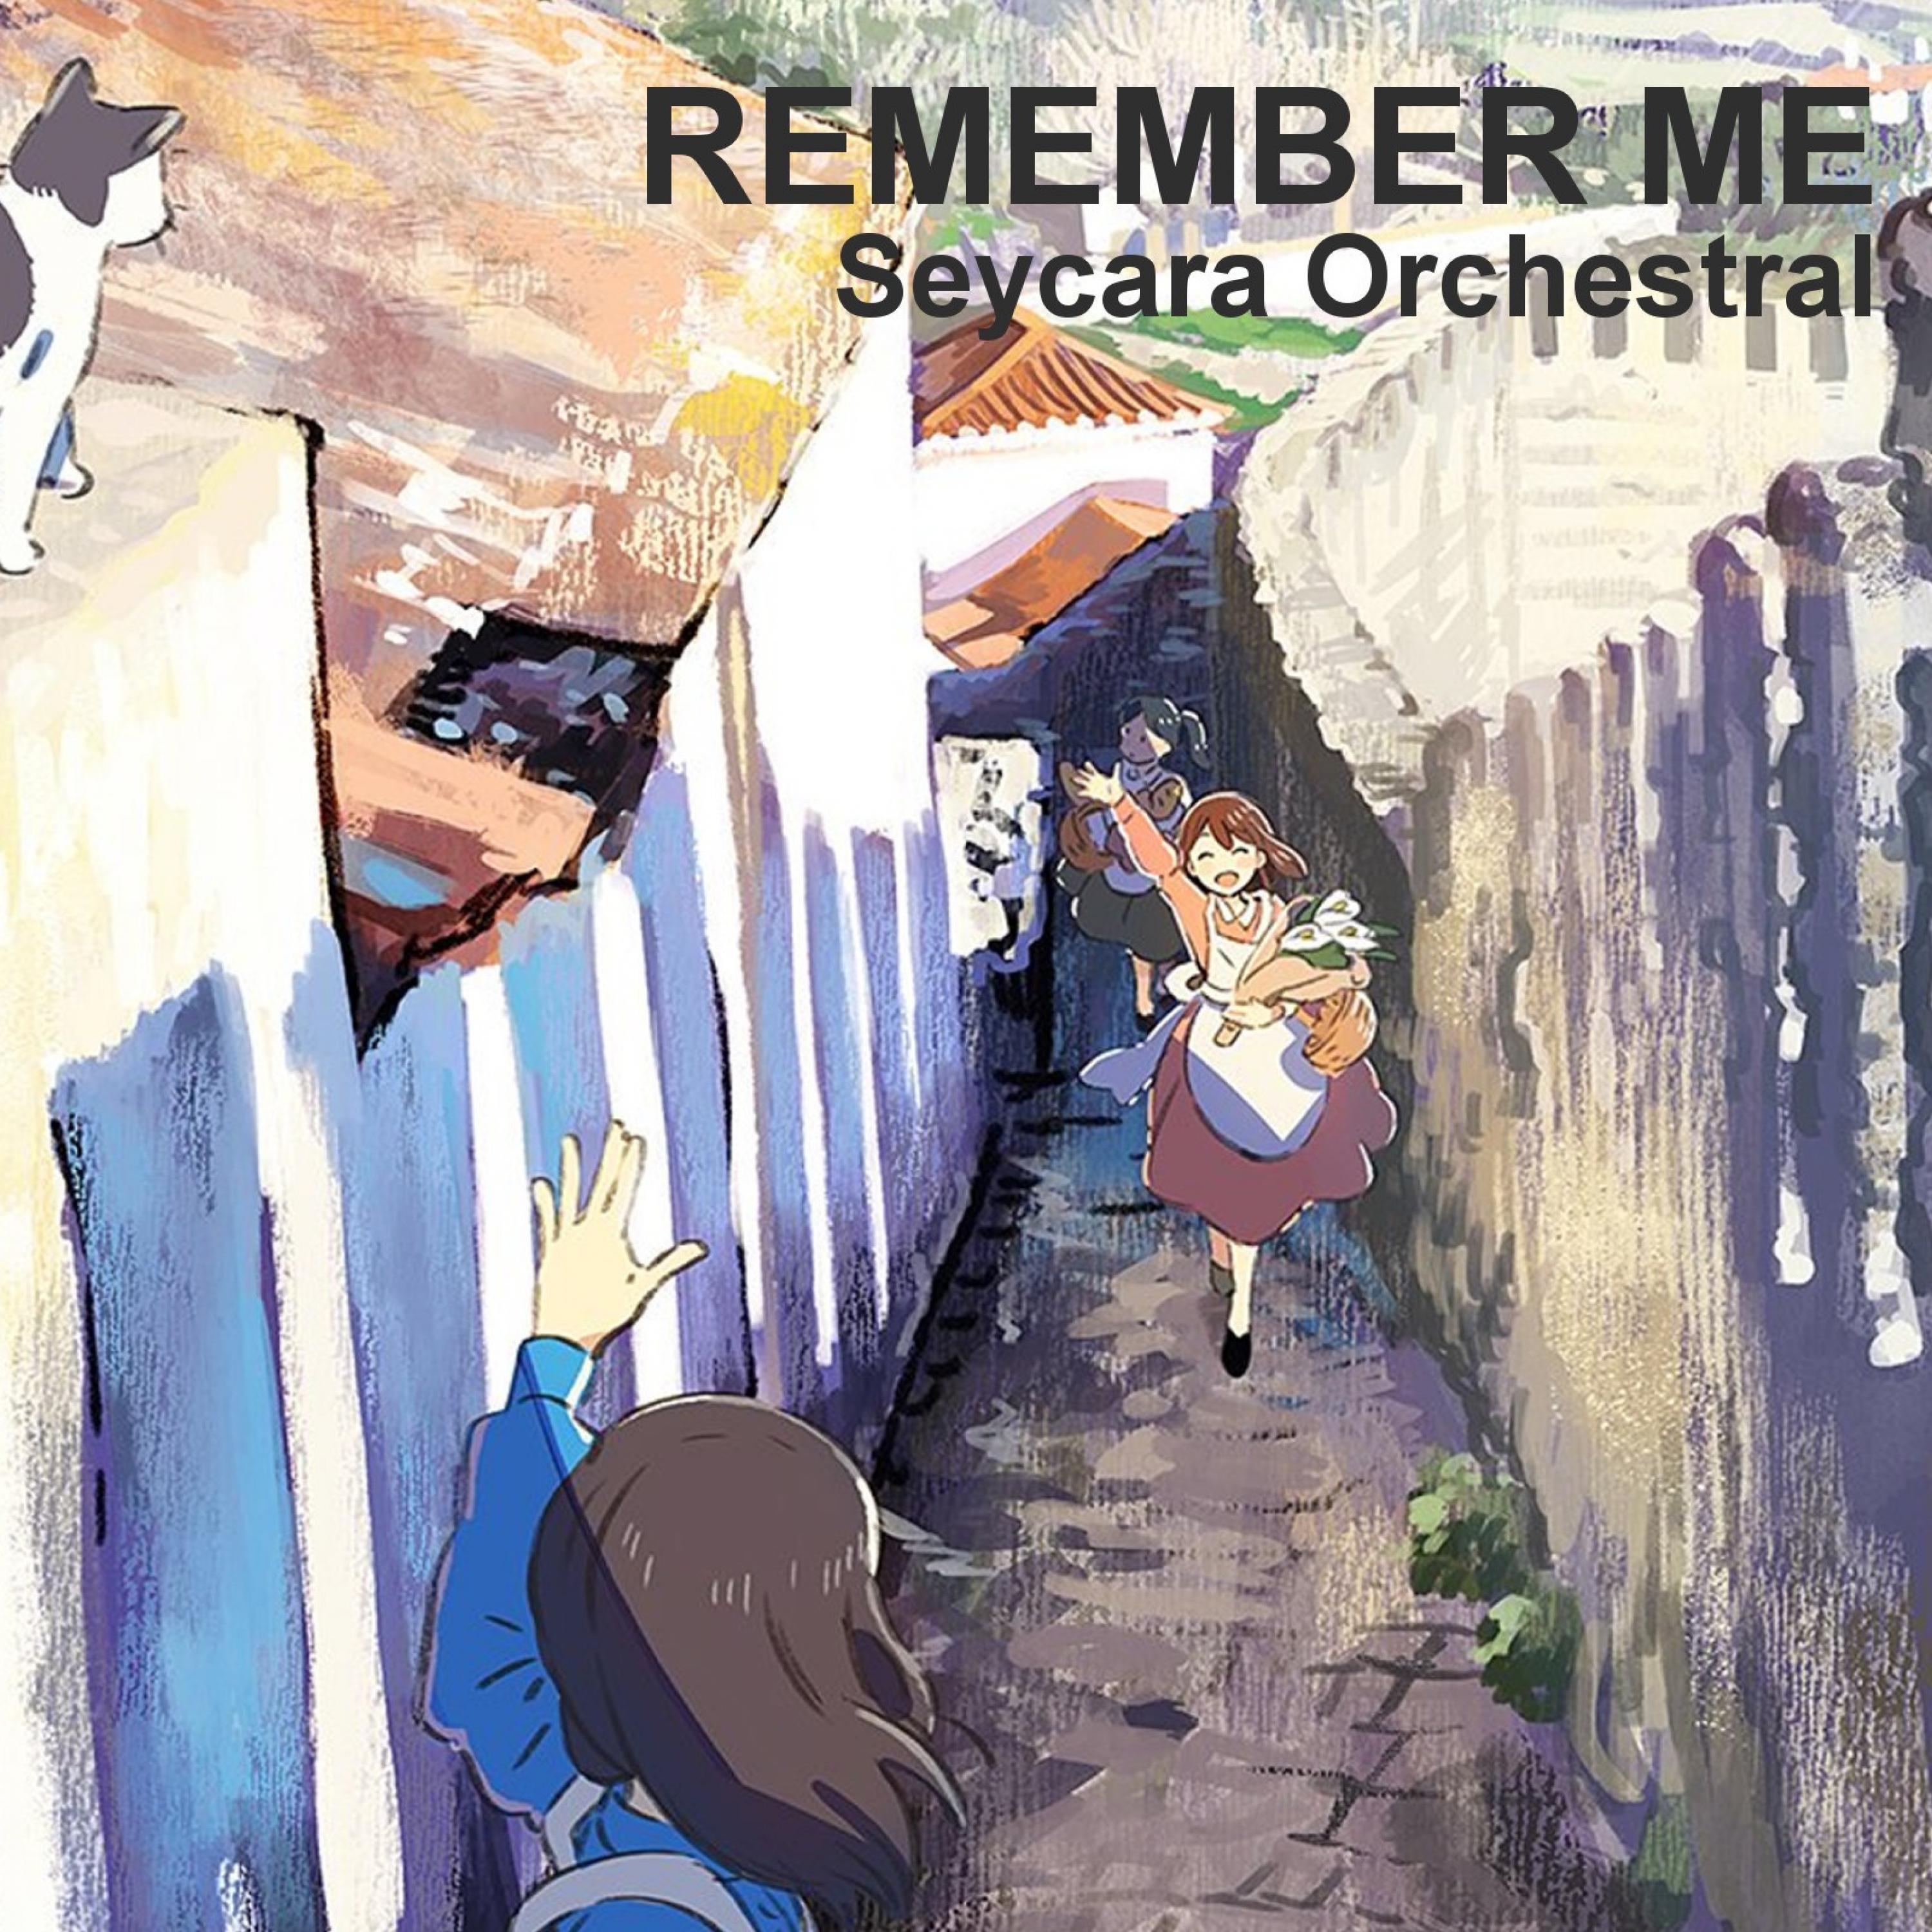 Seycara Orchestral - Remember Me (Piano Edition)